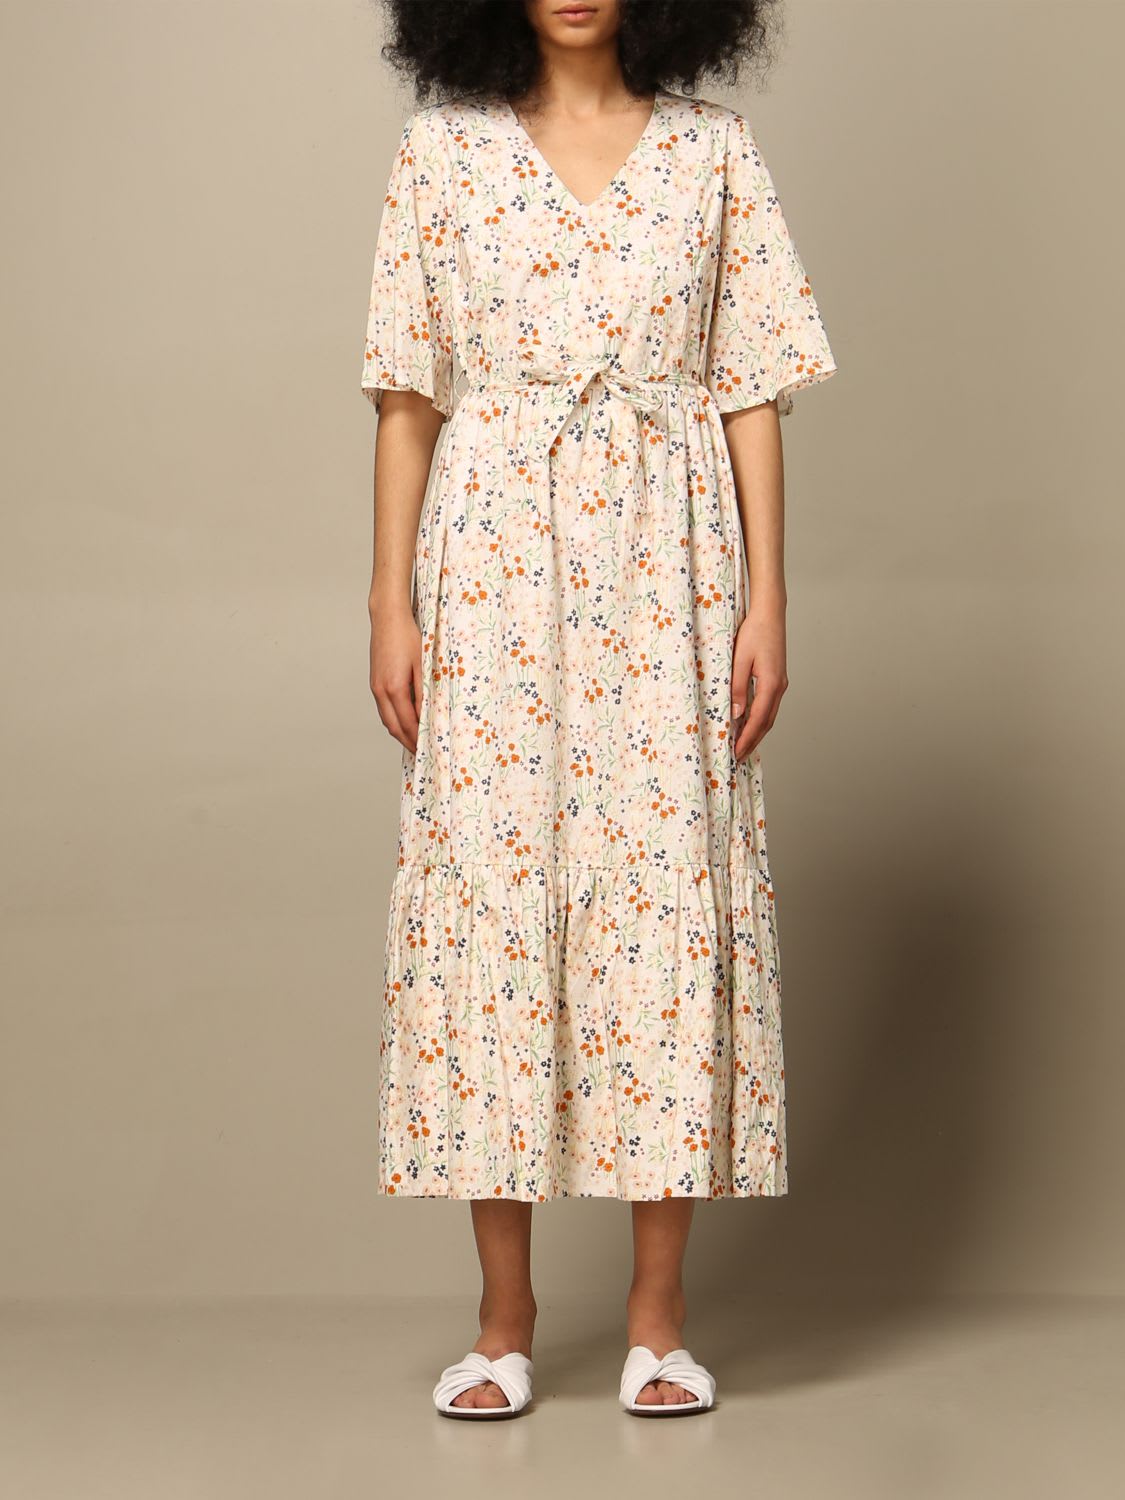 Lautre Chose Dress Lautre Chose Dress In Patterned Cotton